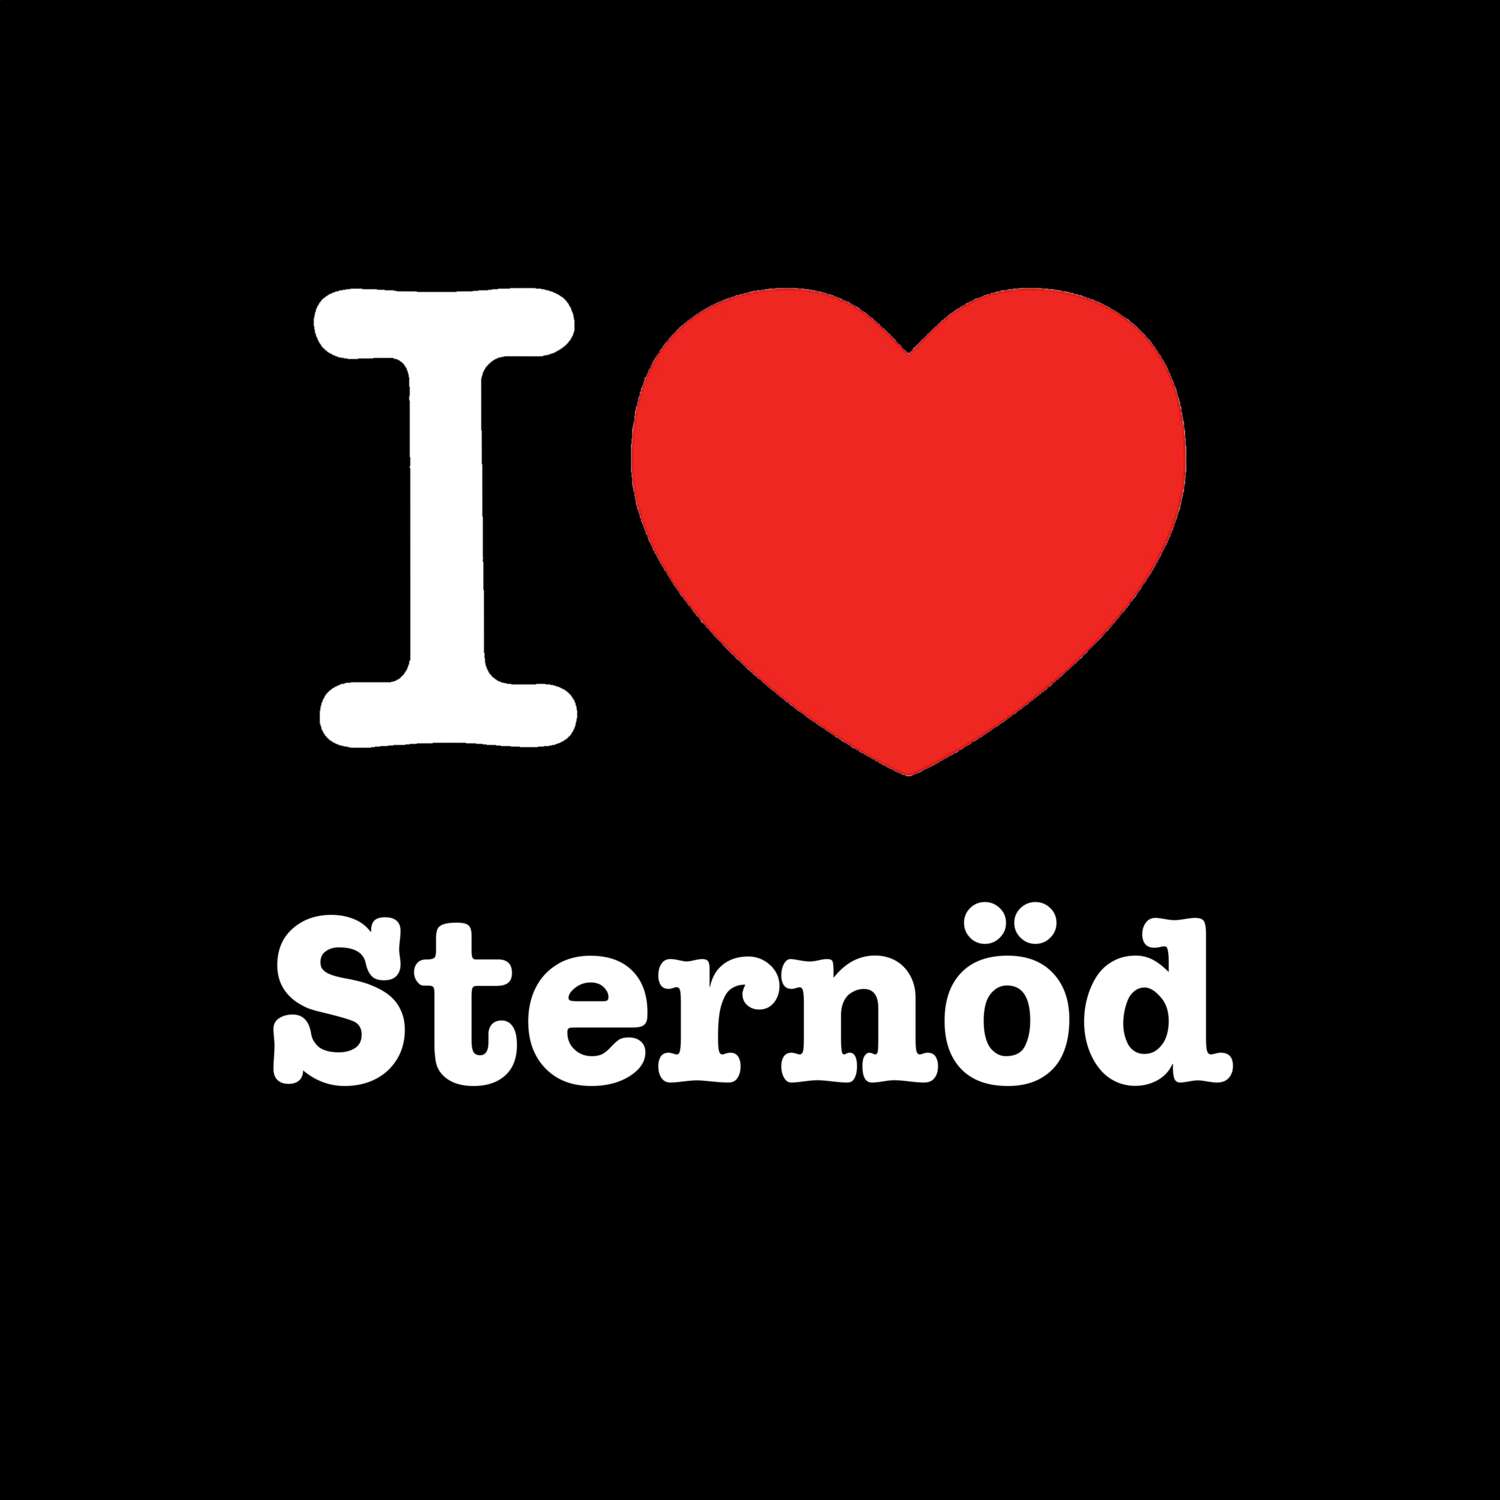 Sternöd T-Shirt »I love«